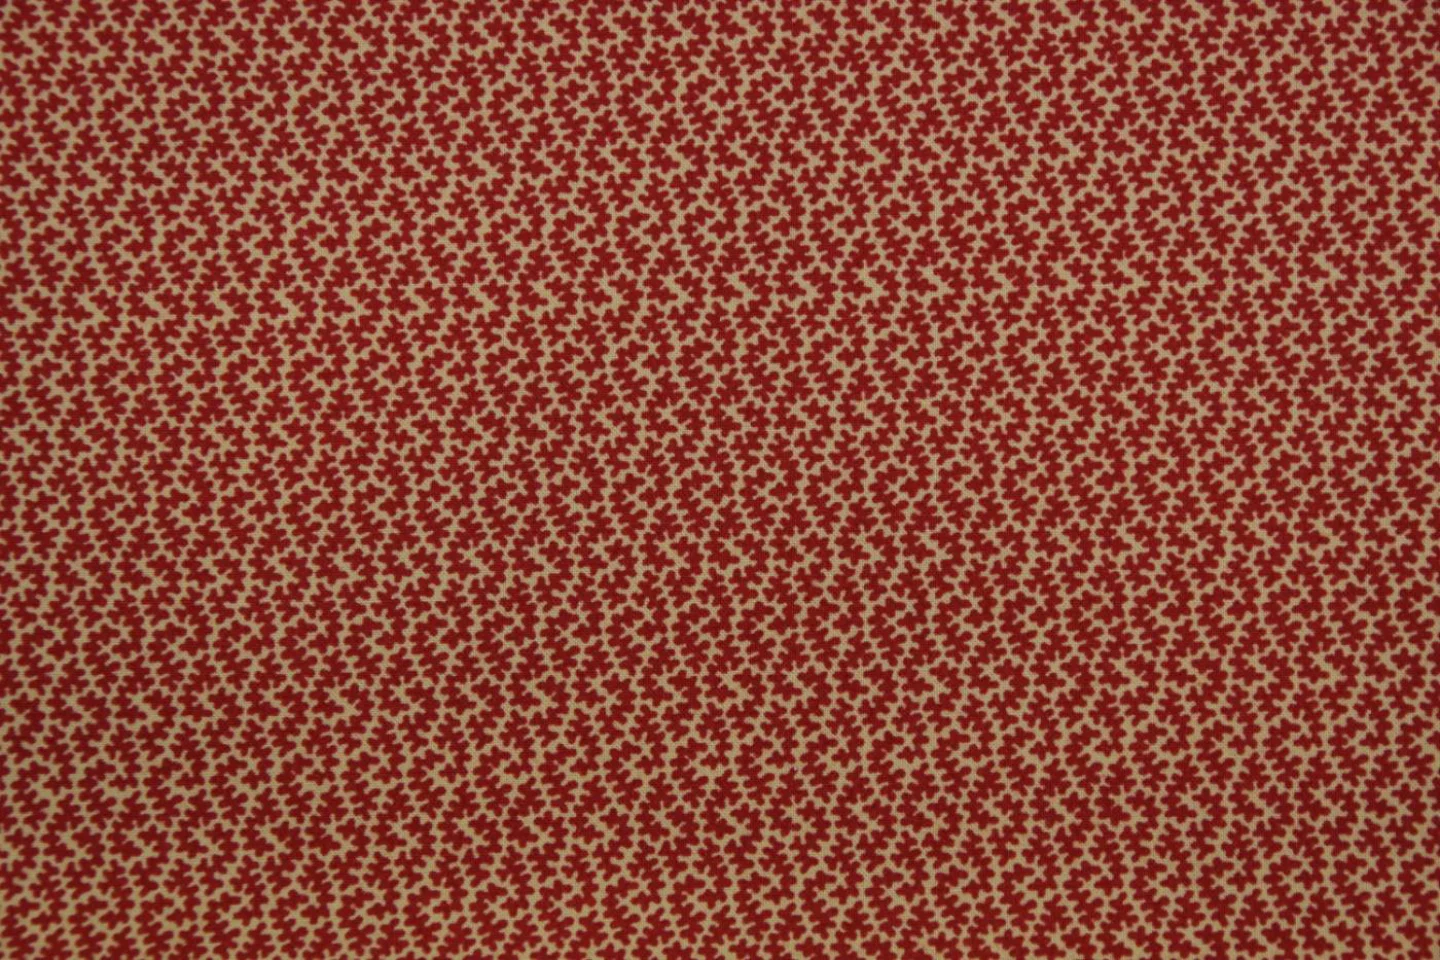 quiltstof-beige-rood motief-Moda Fabrics.